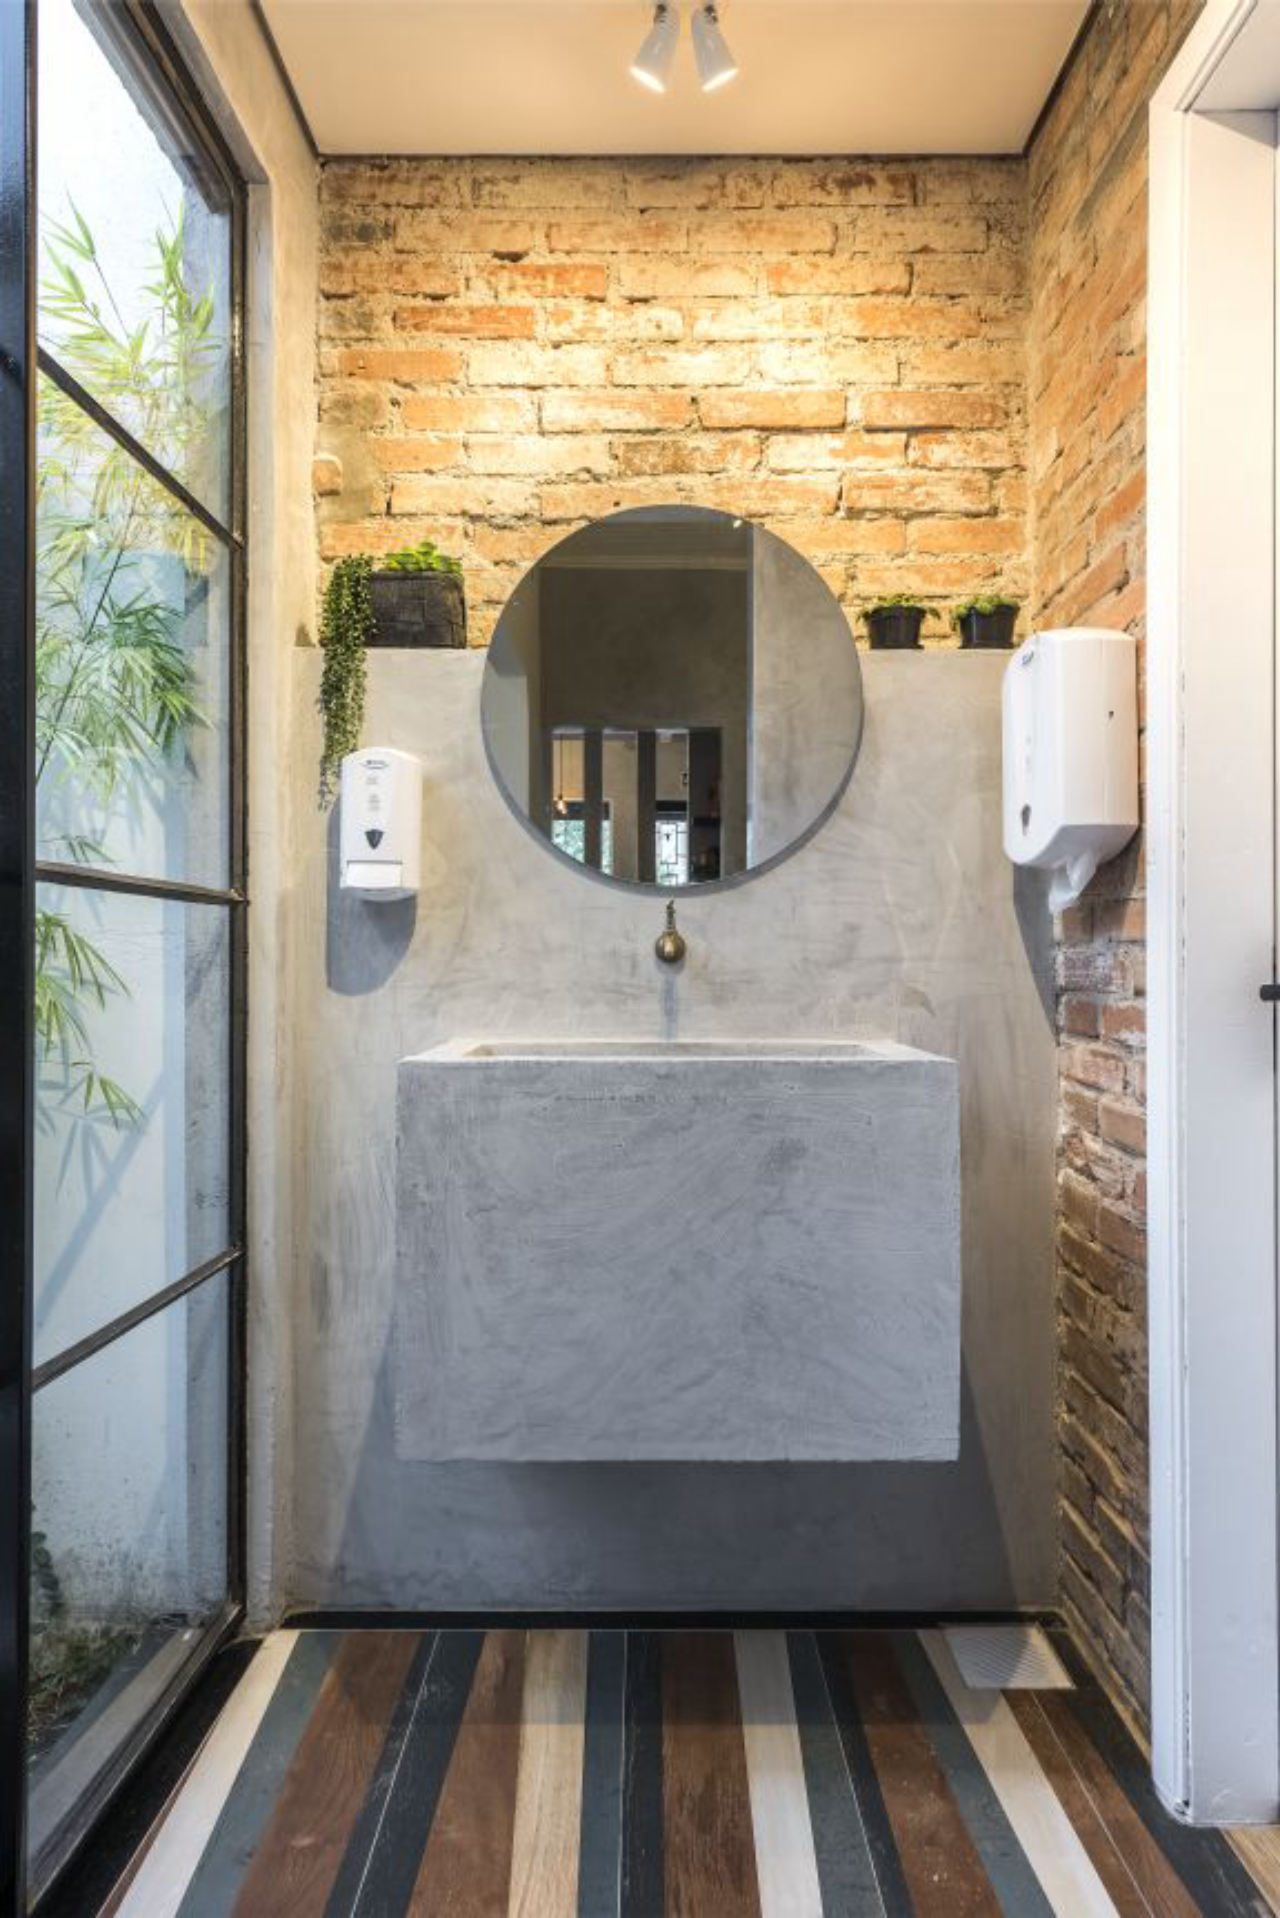 No banheiro, blocos de concreto para sustentar a pia corroboram o estilo industrial do projeto. Foto: Marcelo Stammer